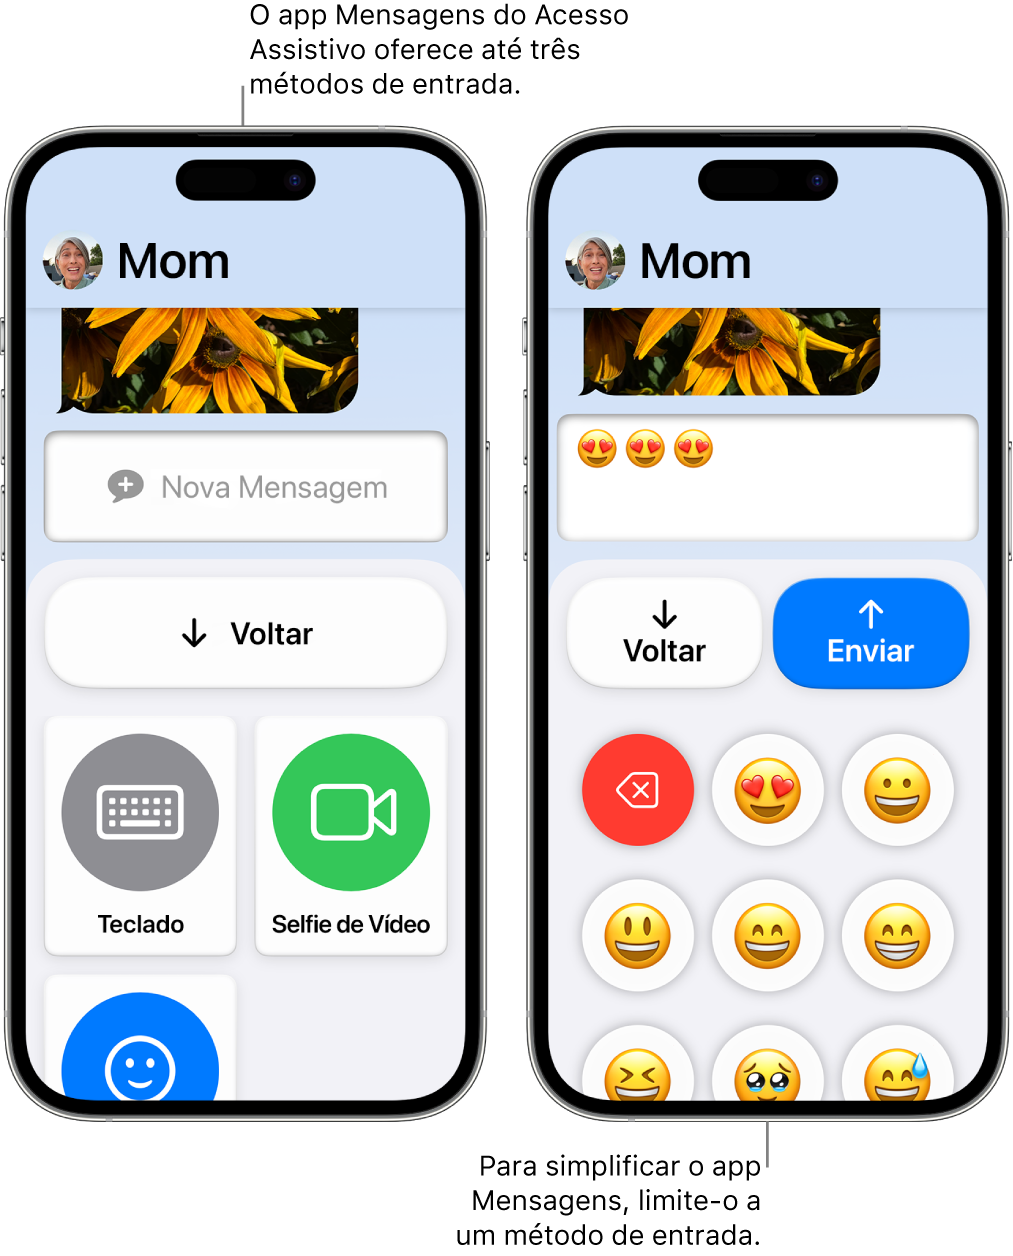 Dois iPhones no Acesso Assistivo. Um iPhone mostra o app Mensagens com métodos de entrada para escolha do usuário, como Teclado ou Selfie de Vídeo. O outro mostra uma mensagem sendo enviada usando um teclado só de emojis.